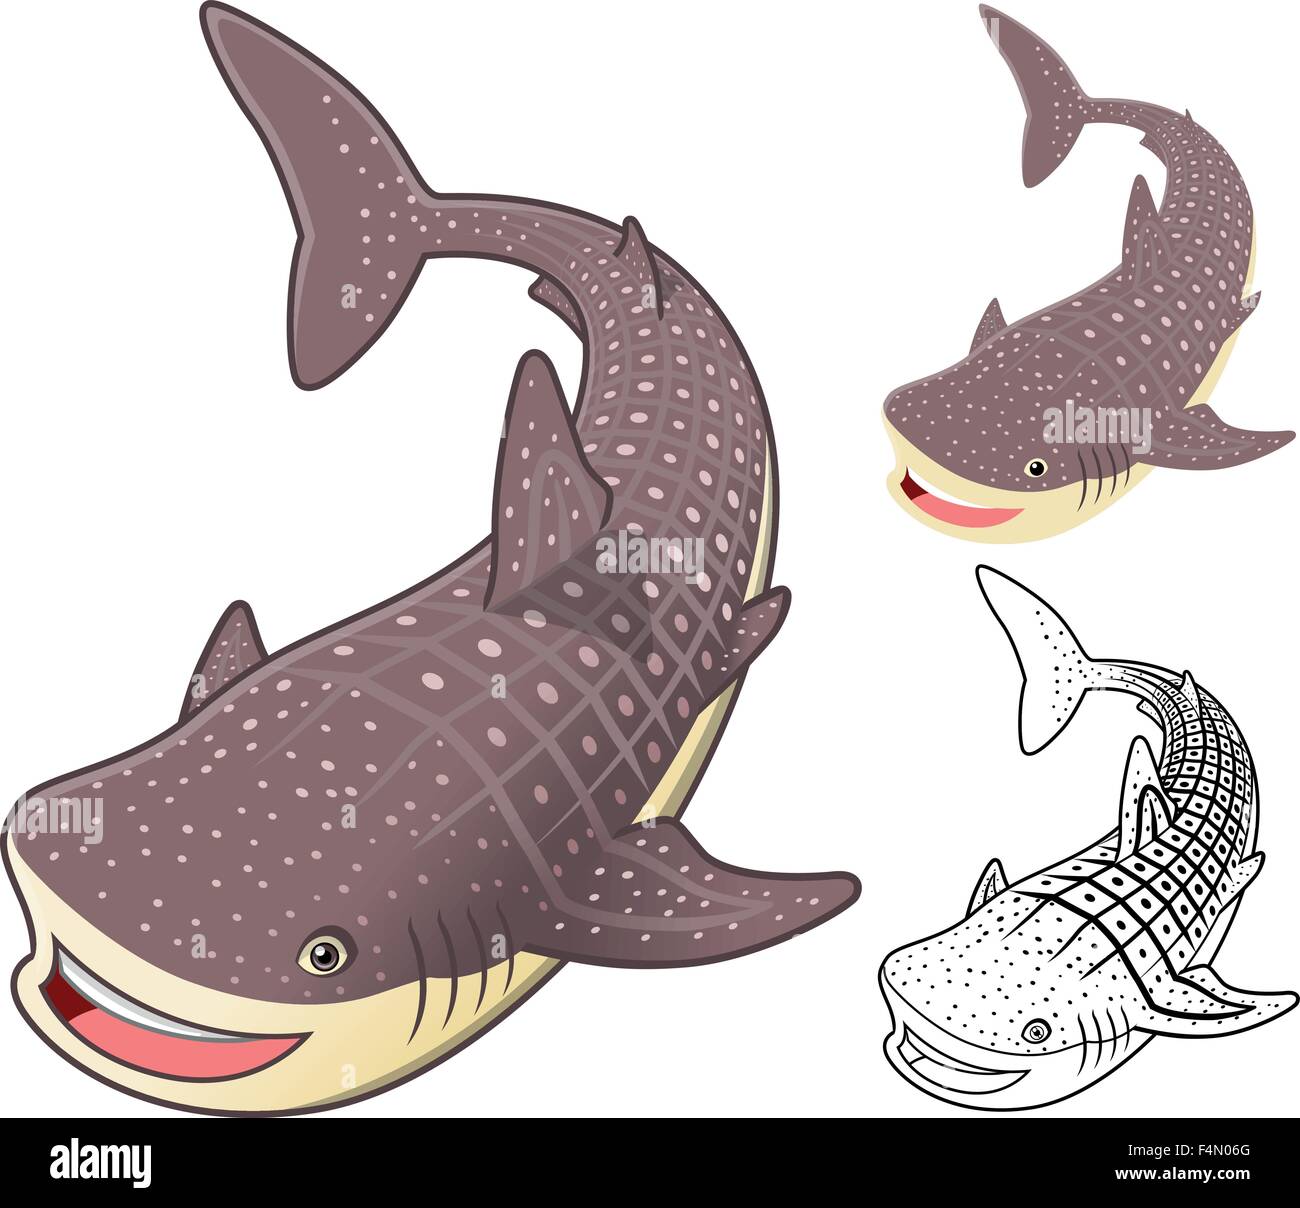 Alta qualità di squalo balena personaggio dei fumetti includono design piatto e Line Art versione Illustrazione Vettoriale